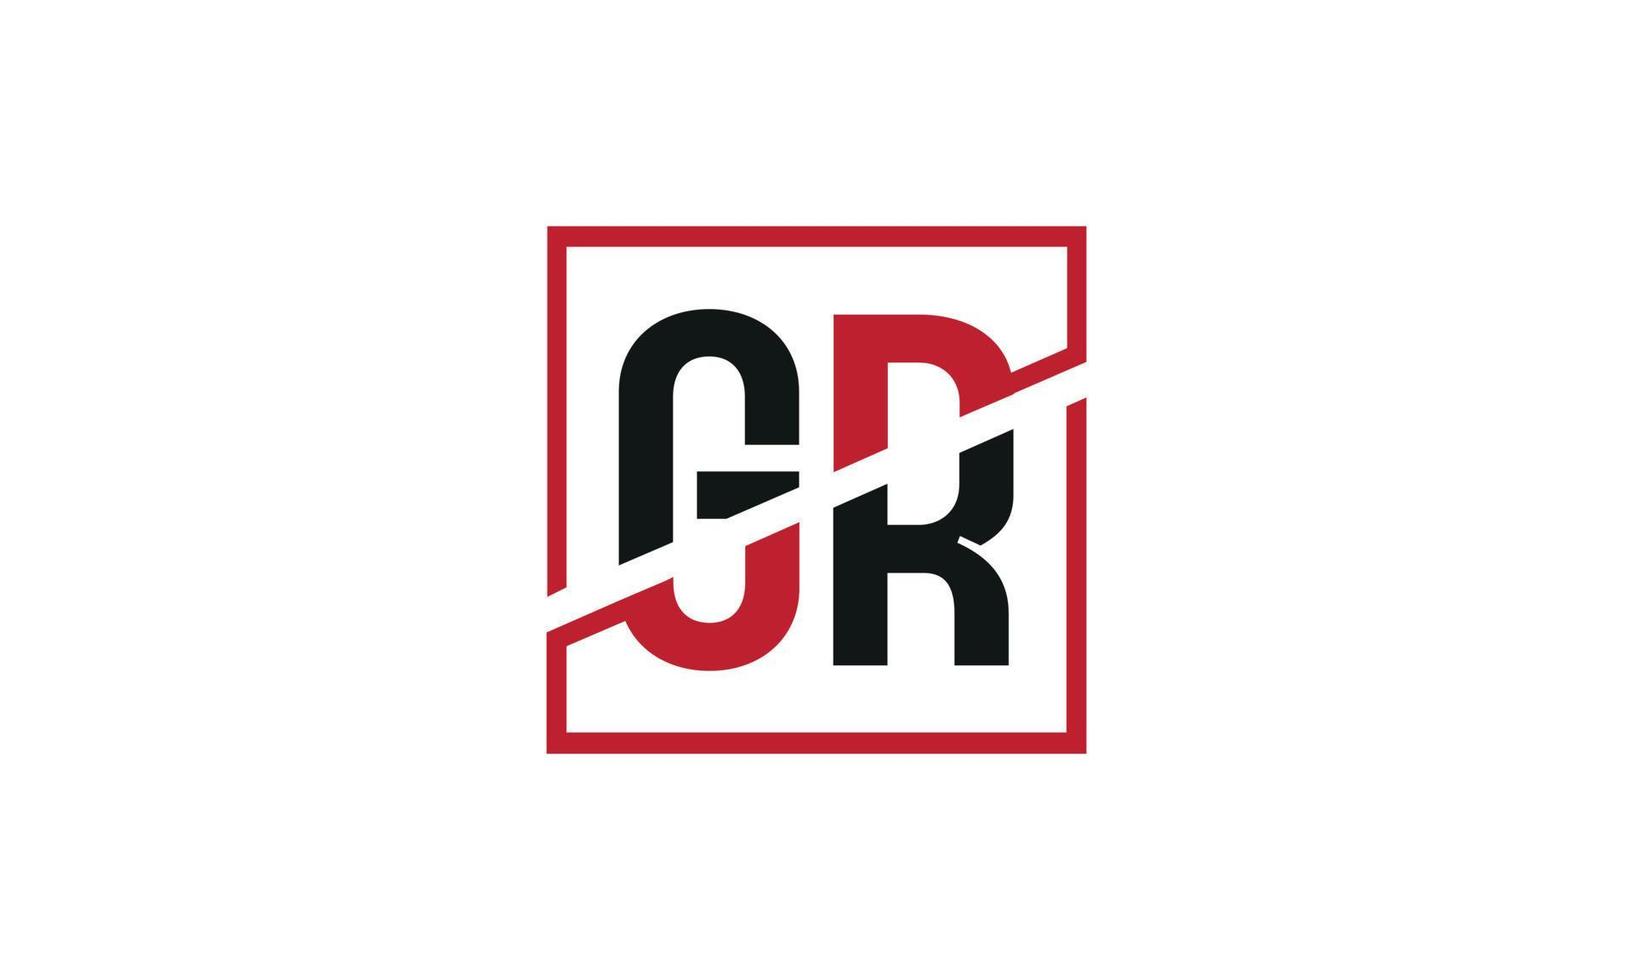 gr design do logotipo. design de monograma do logotipo da letra gr inicial na cor preta e vermelha com forma quadrada. vetor profissional